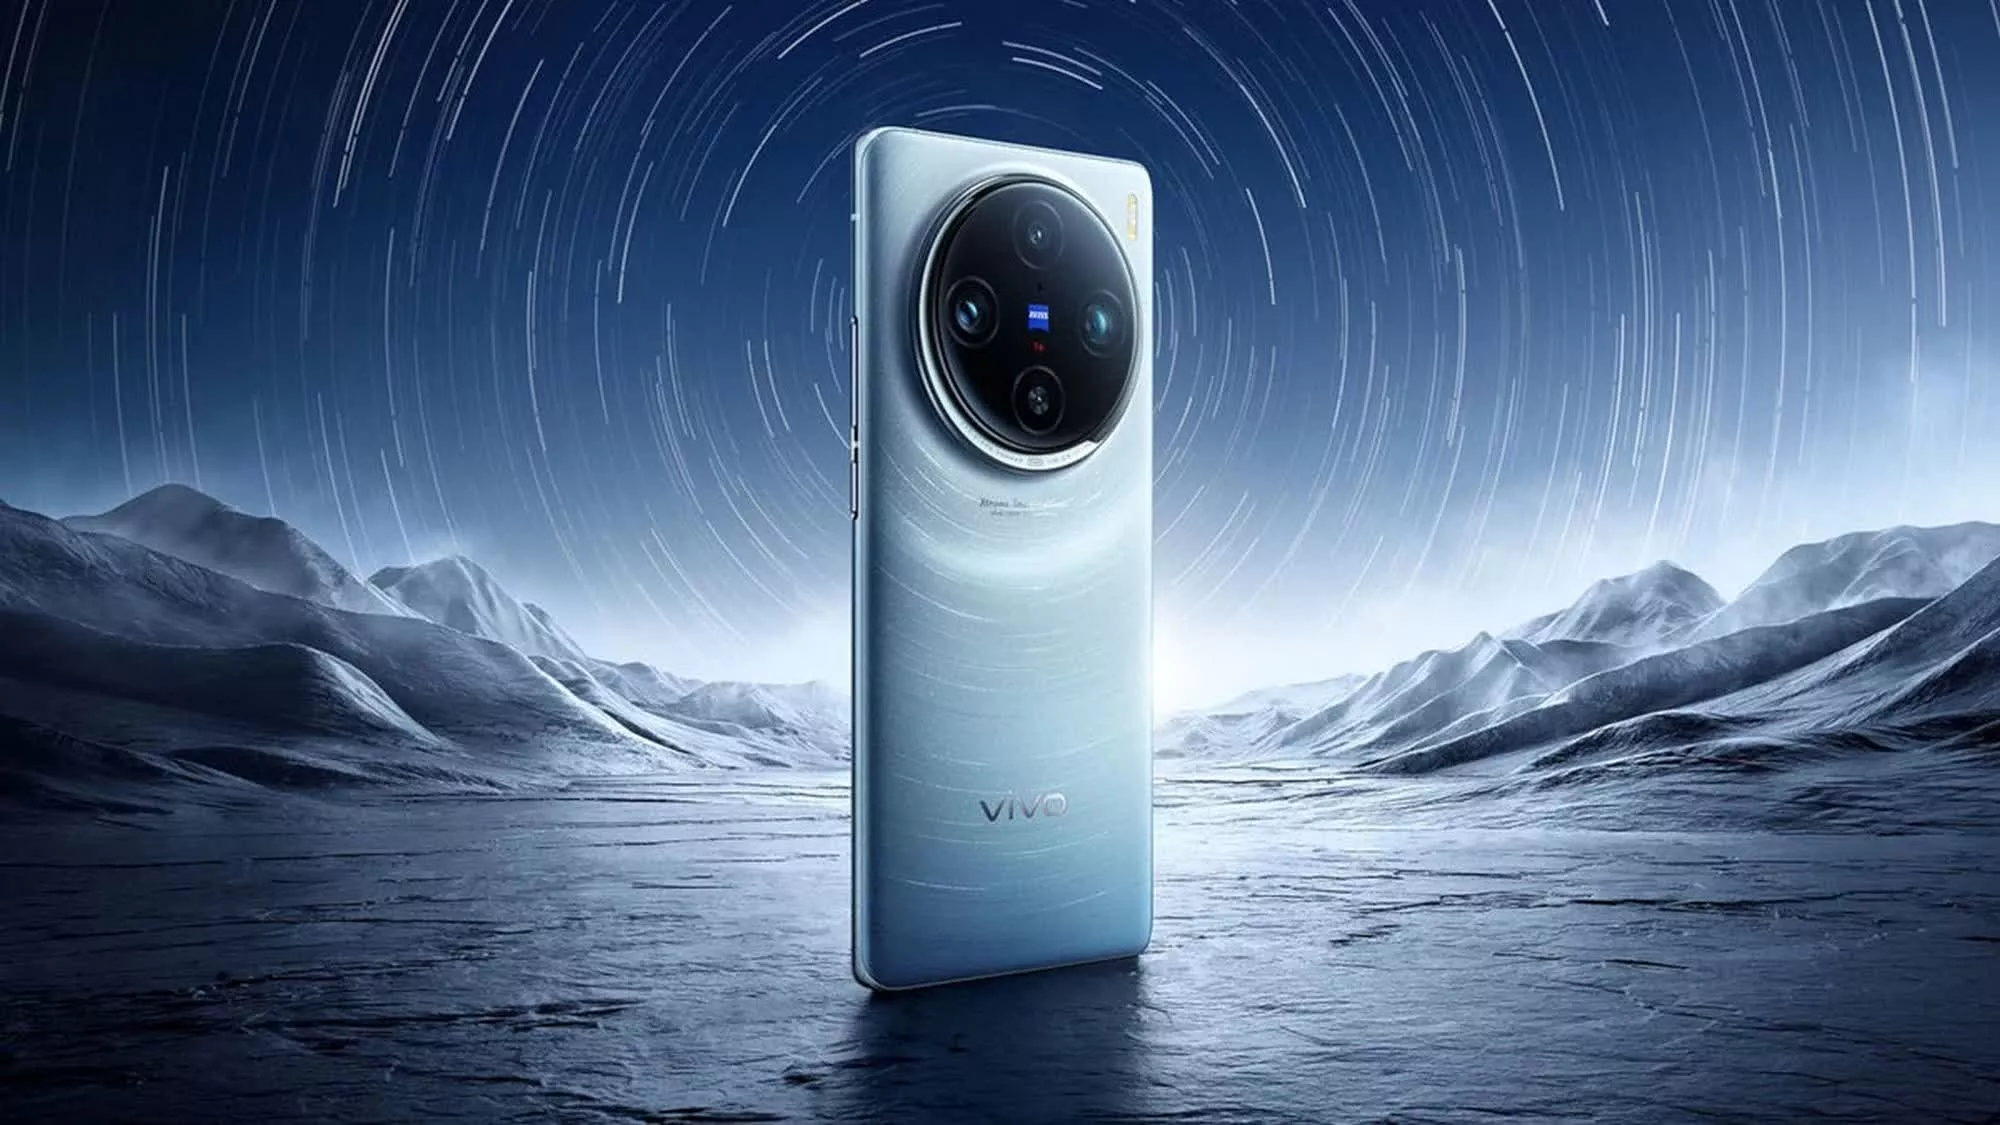 Se espera que la cámara teleobjetivo periscopio de 200MP de Samsung brinde un enorme zoom digital de 200x a los nuevos teléfonos